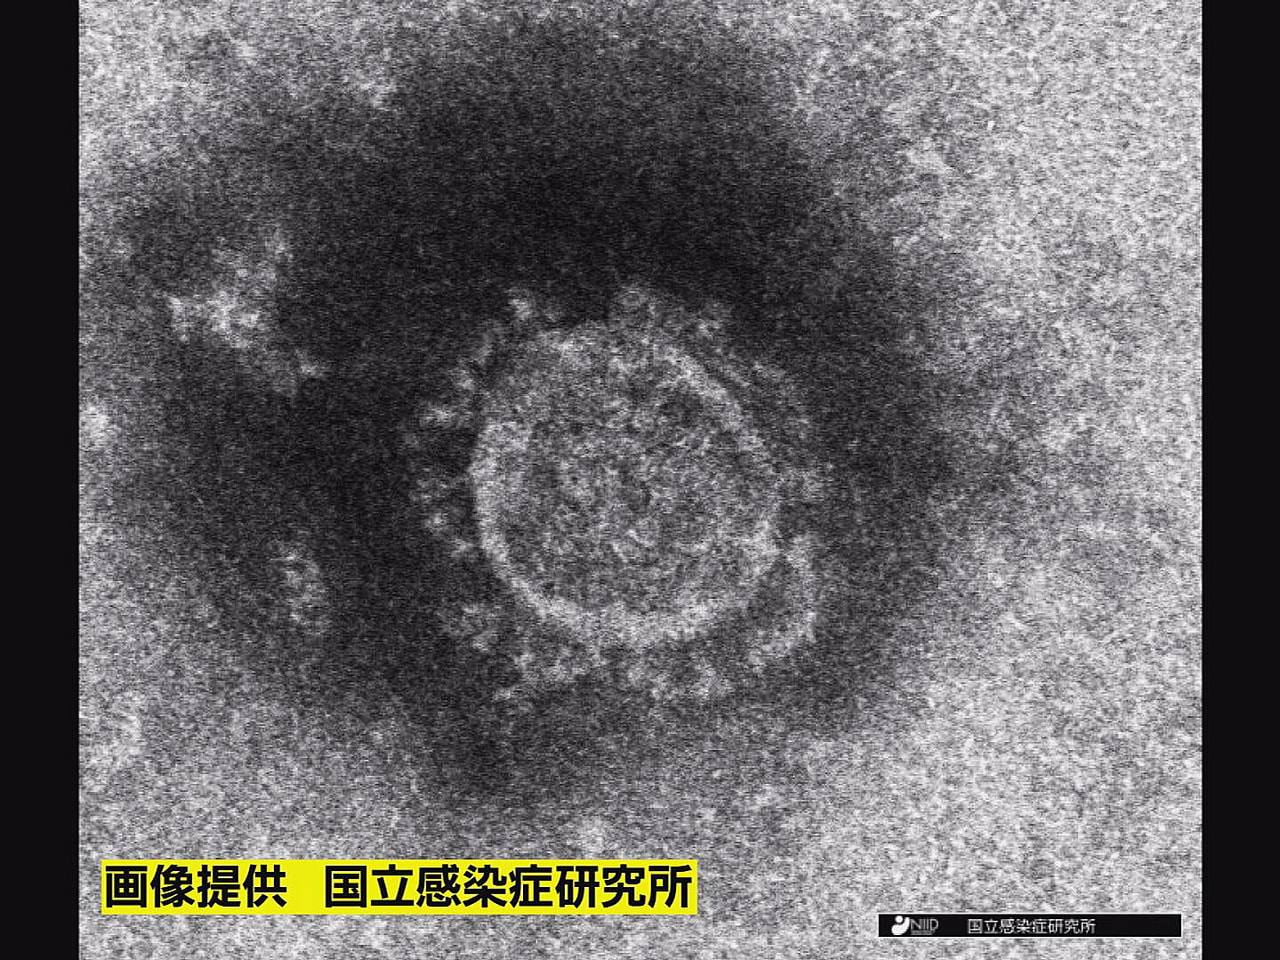 岐阜県は１６日、新型コロナウイルスの感染が新たに１人確認され、１人が死亡したと発...